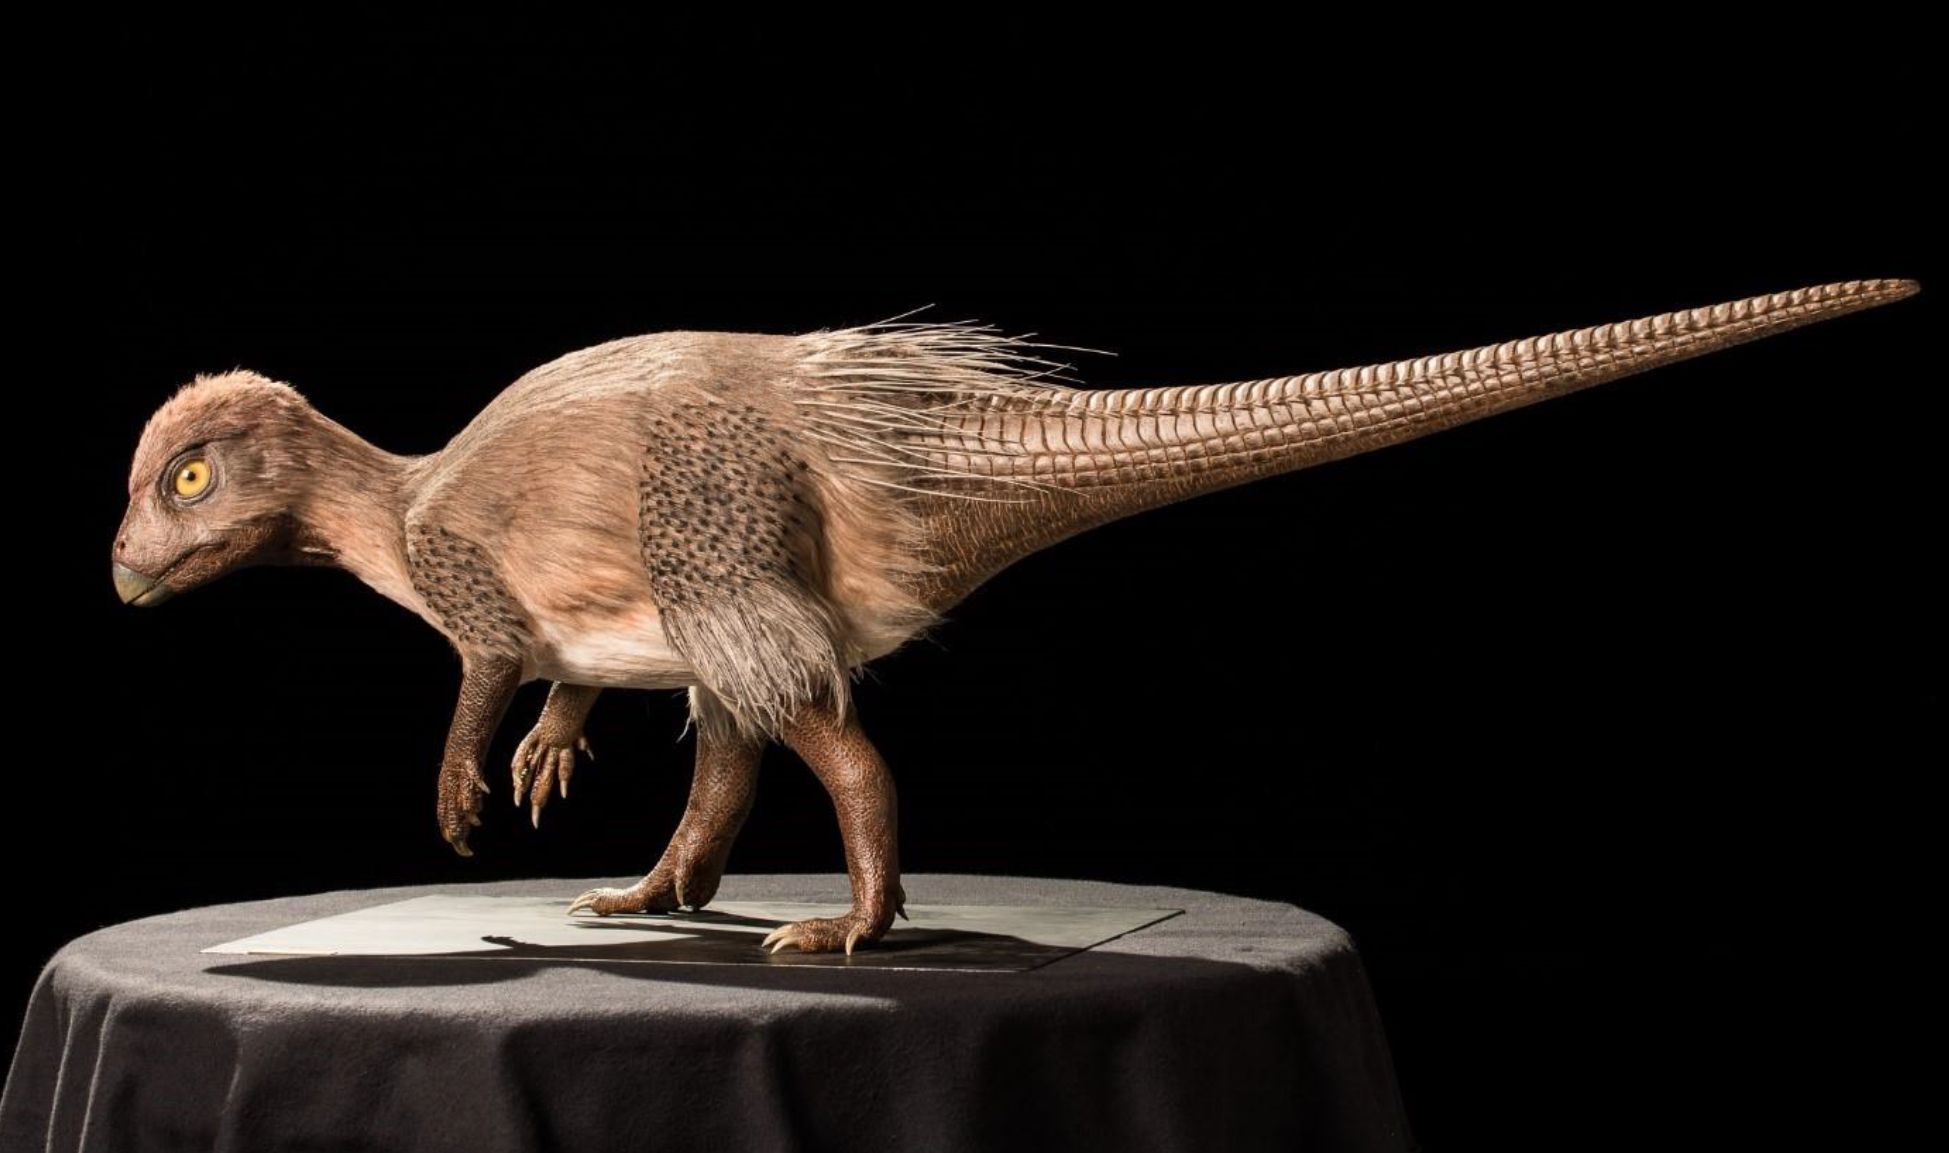 Kulindadromeus zabaikalicus, the oldest dinosaur with ‘feather-like’ structures